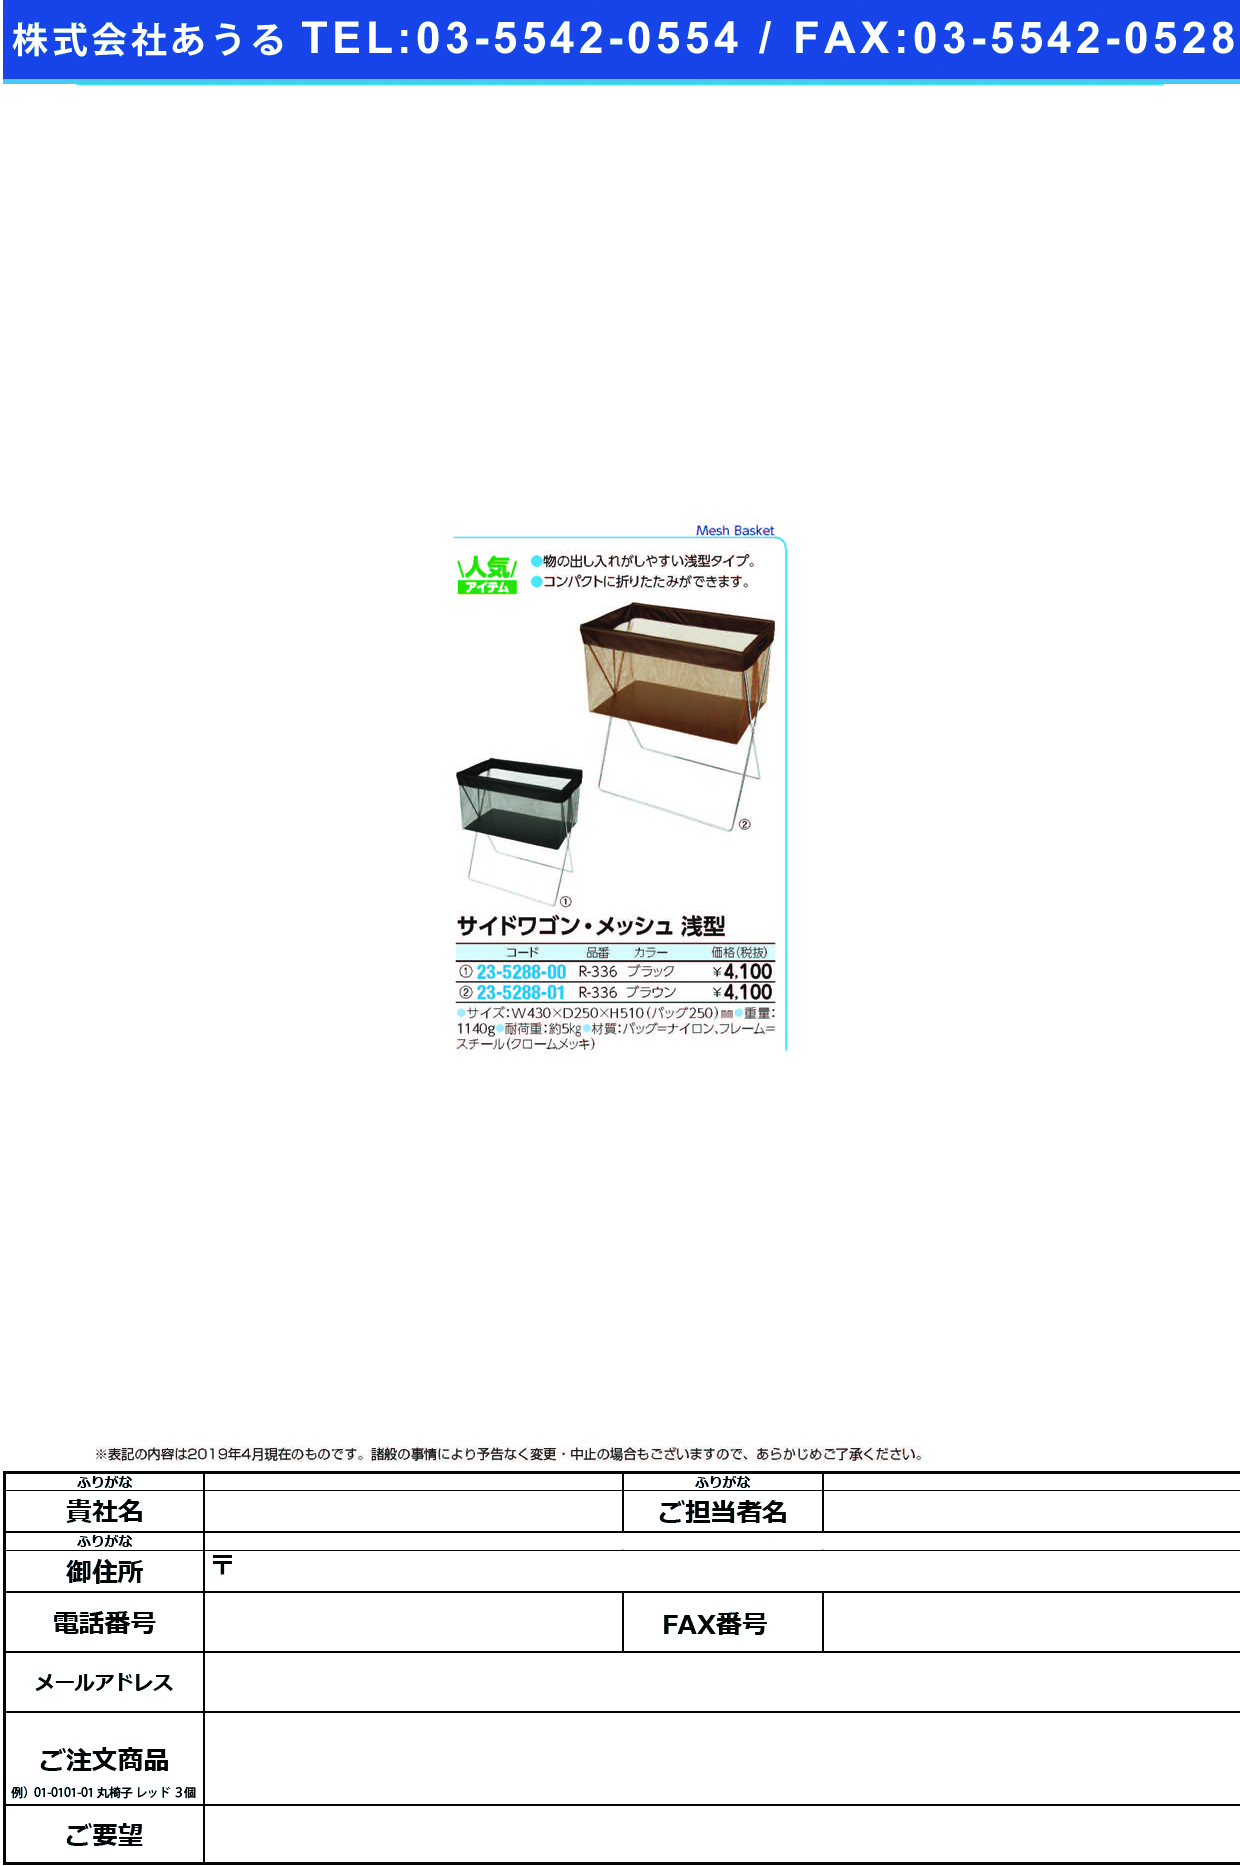 (23-5288-00)サイドワゴン・メッシュ浅型 R-336(ﾌﾞﾗｯｸ) ｻｲﾄﾞﾜｺﾞﾝﾒｯｼｭｱｻｶﾞﾀ【1個単位】【2019年カタログ商品】